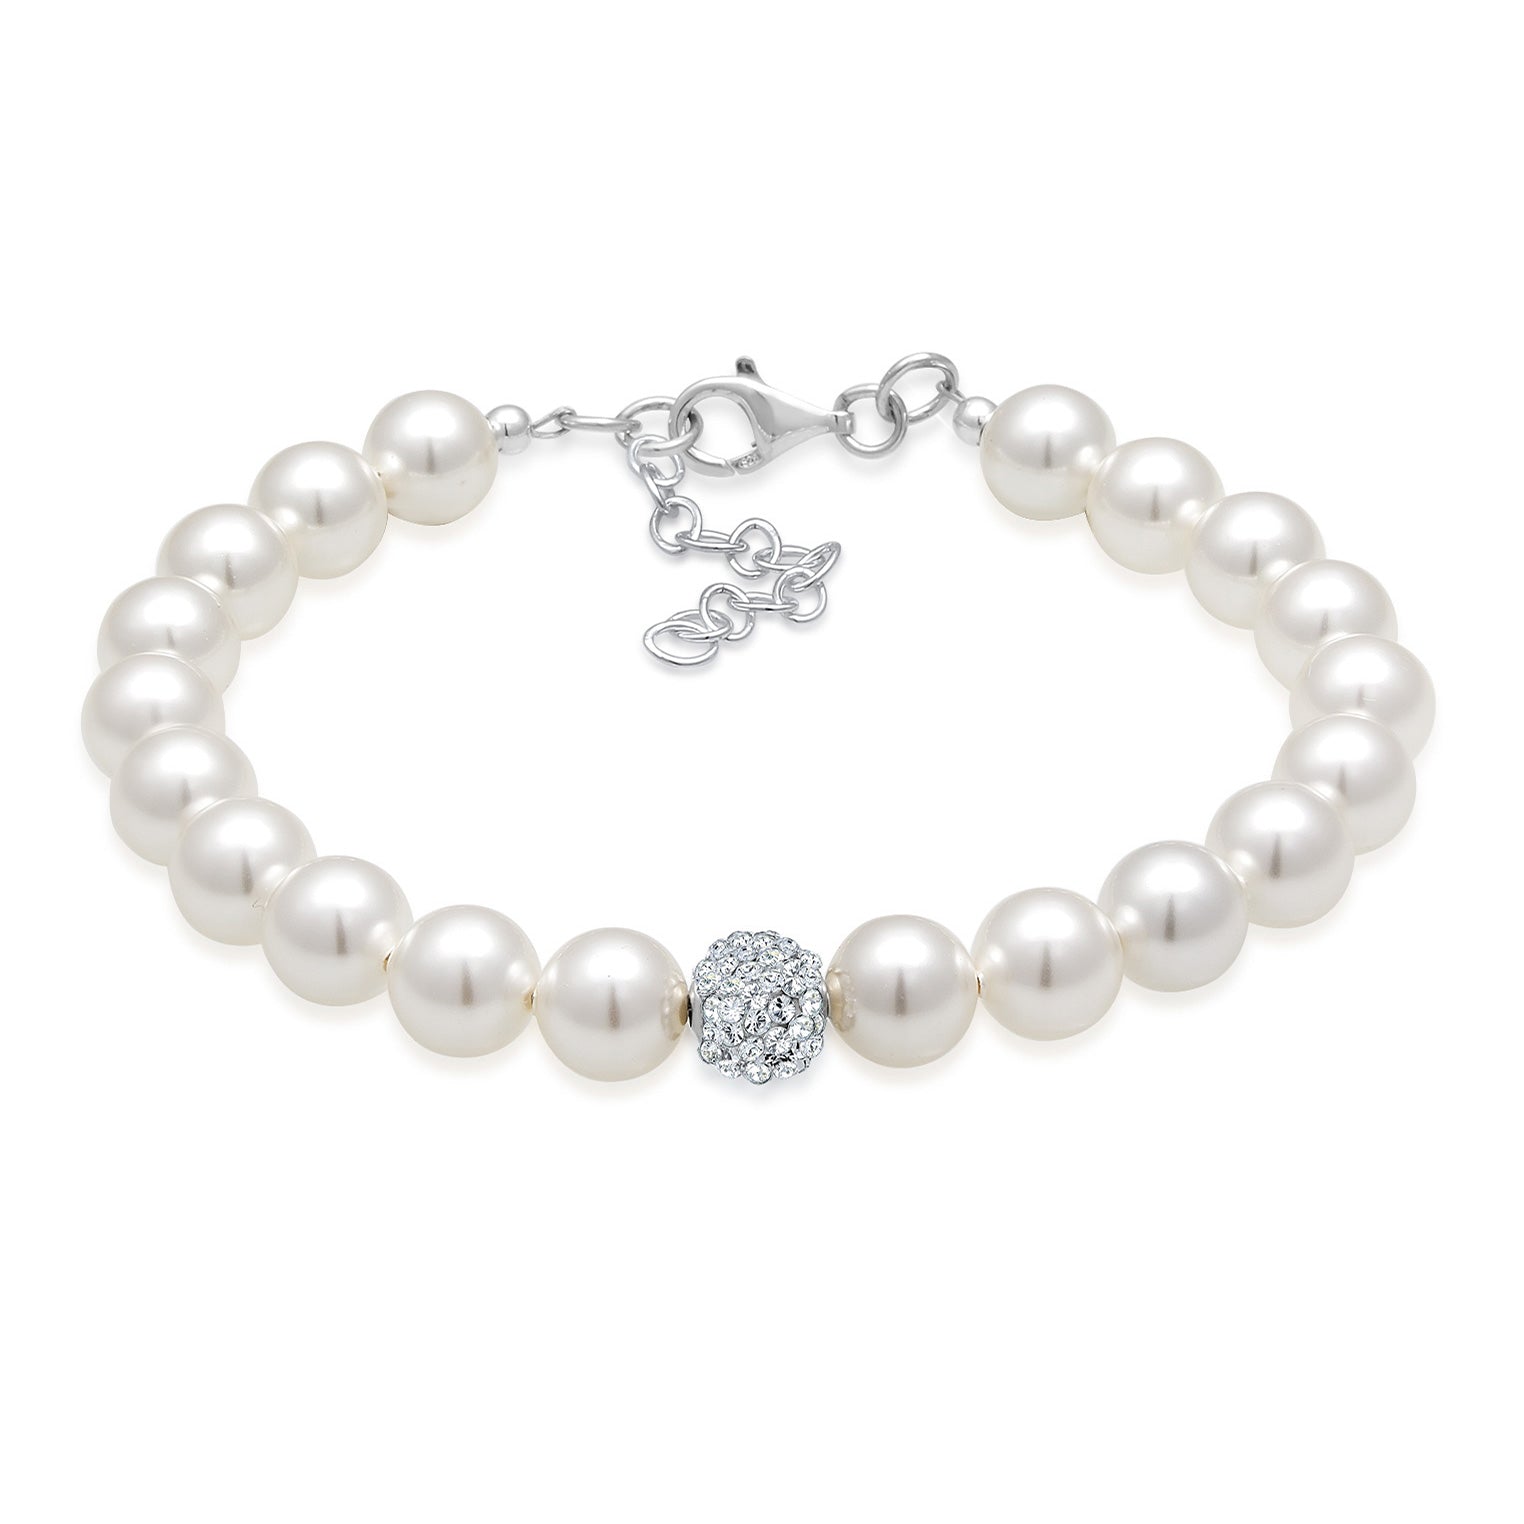 Perlenarmbänder zeitloses Design | online bei Elli – Elli Jewelry